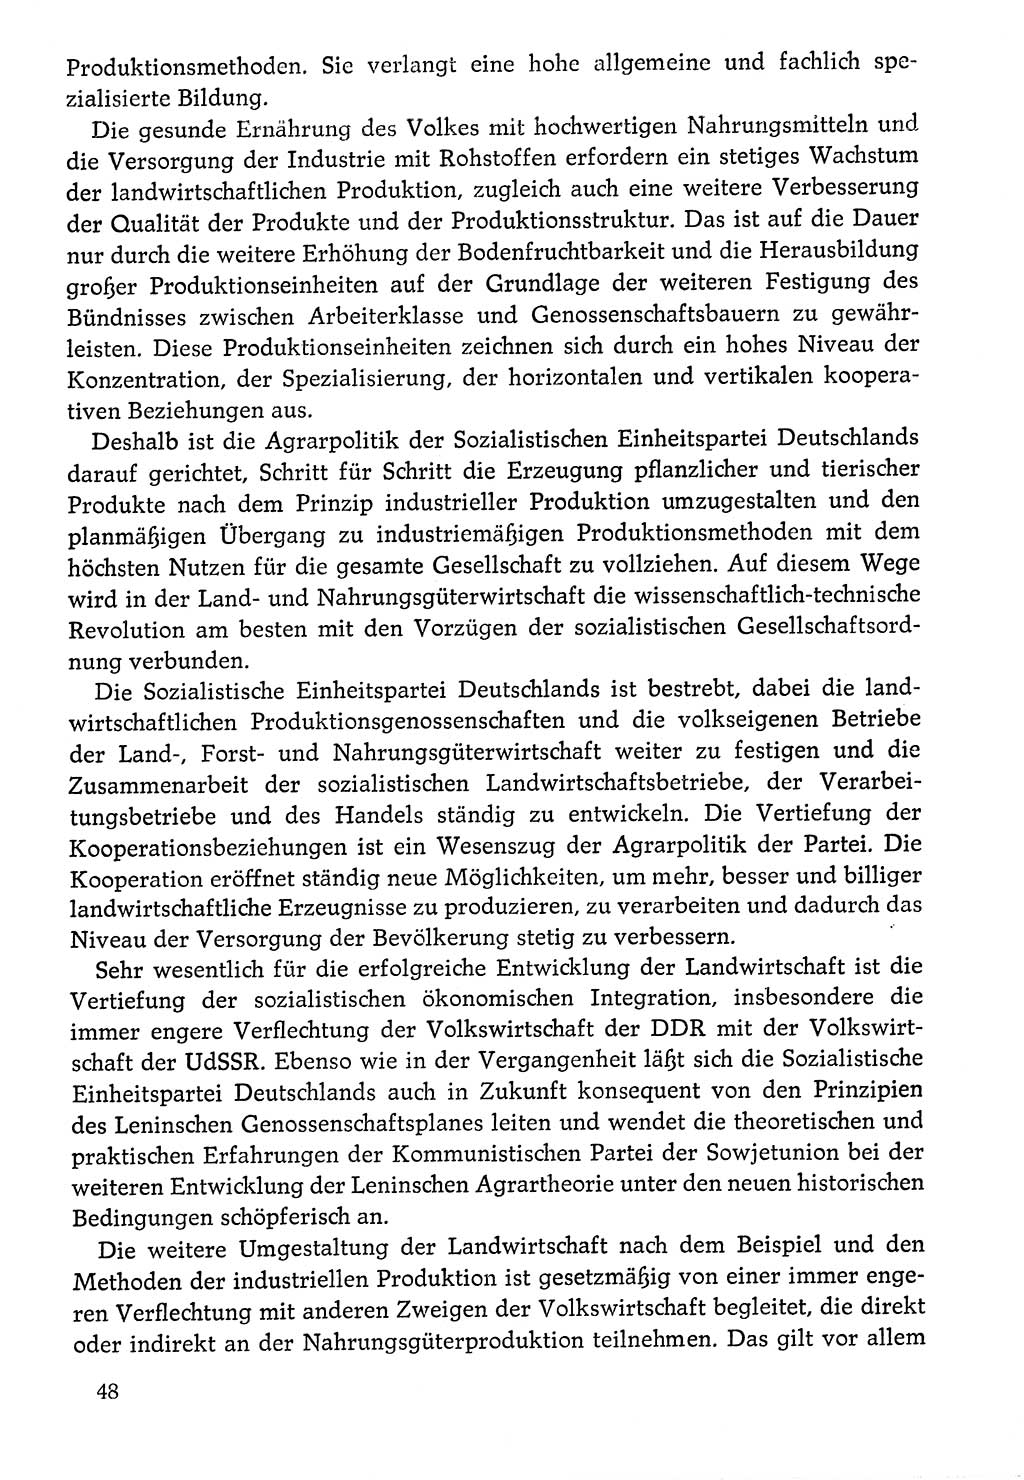 Dokumente der Sozialistischen Einheitspartei Deutschlands (SED) [Deutsche Demokratische Republik (DDR)] 1976-1977, Seite 48 (Dok. SED DDR 1976-1977, S. 48)